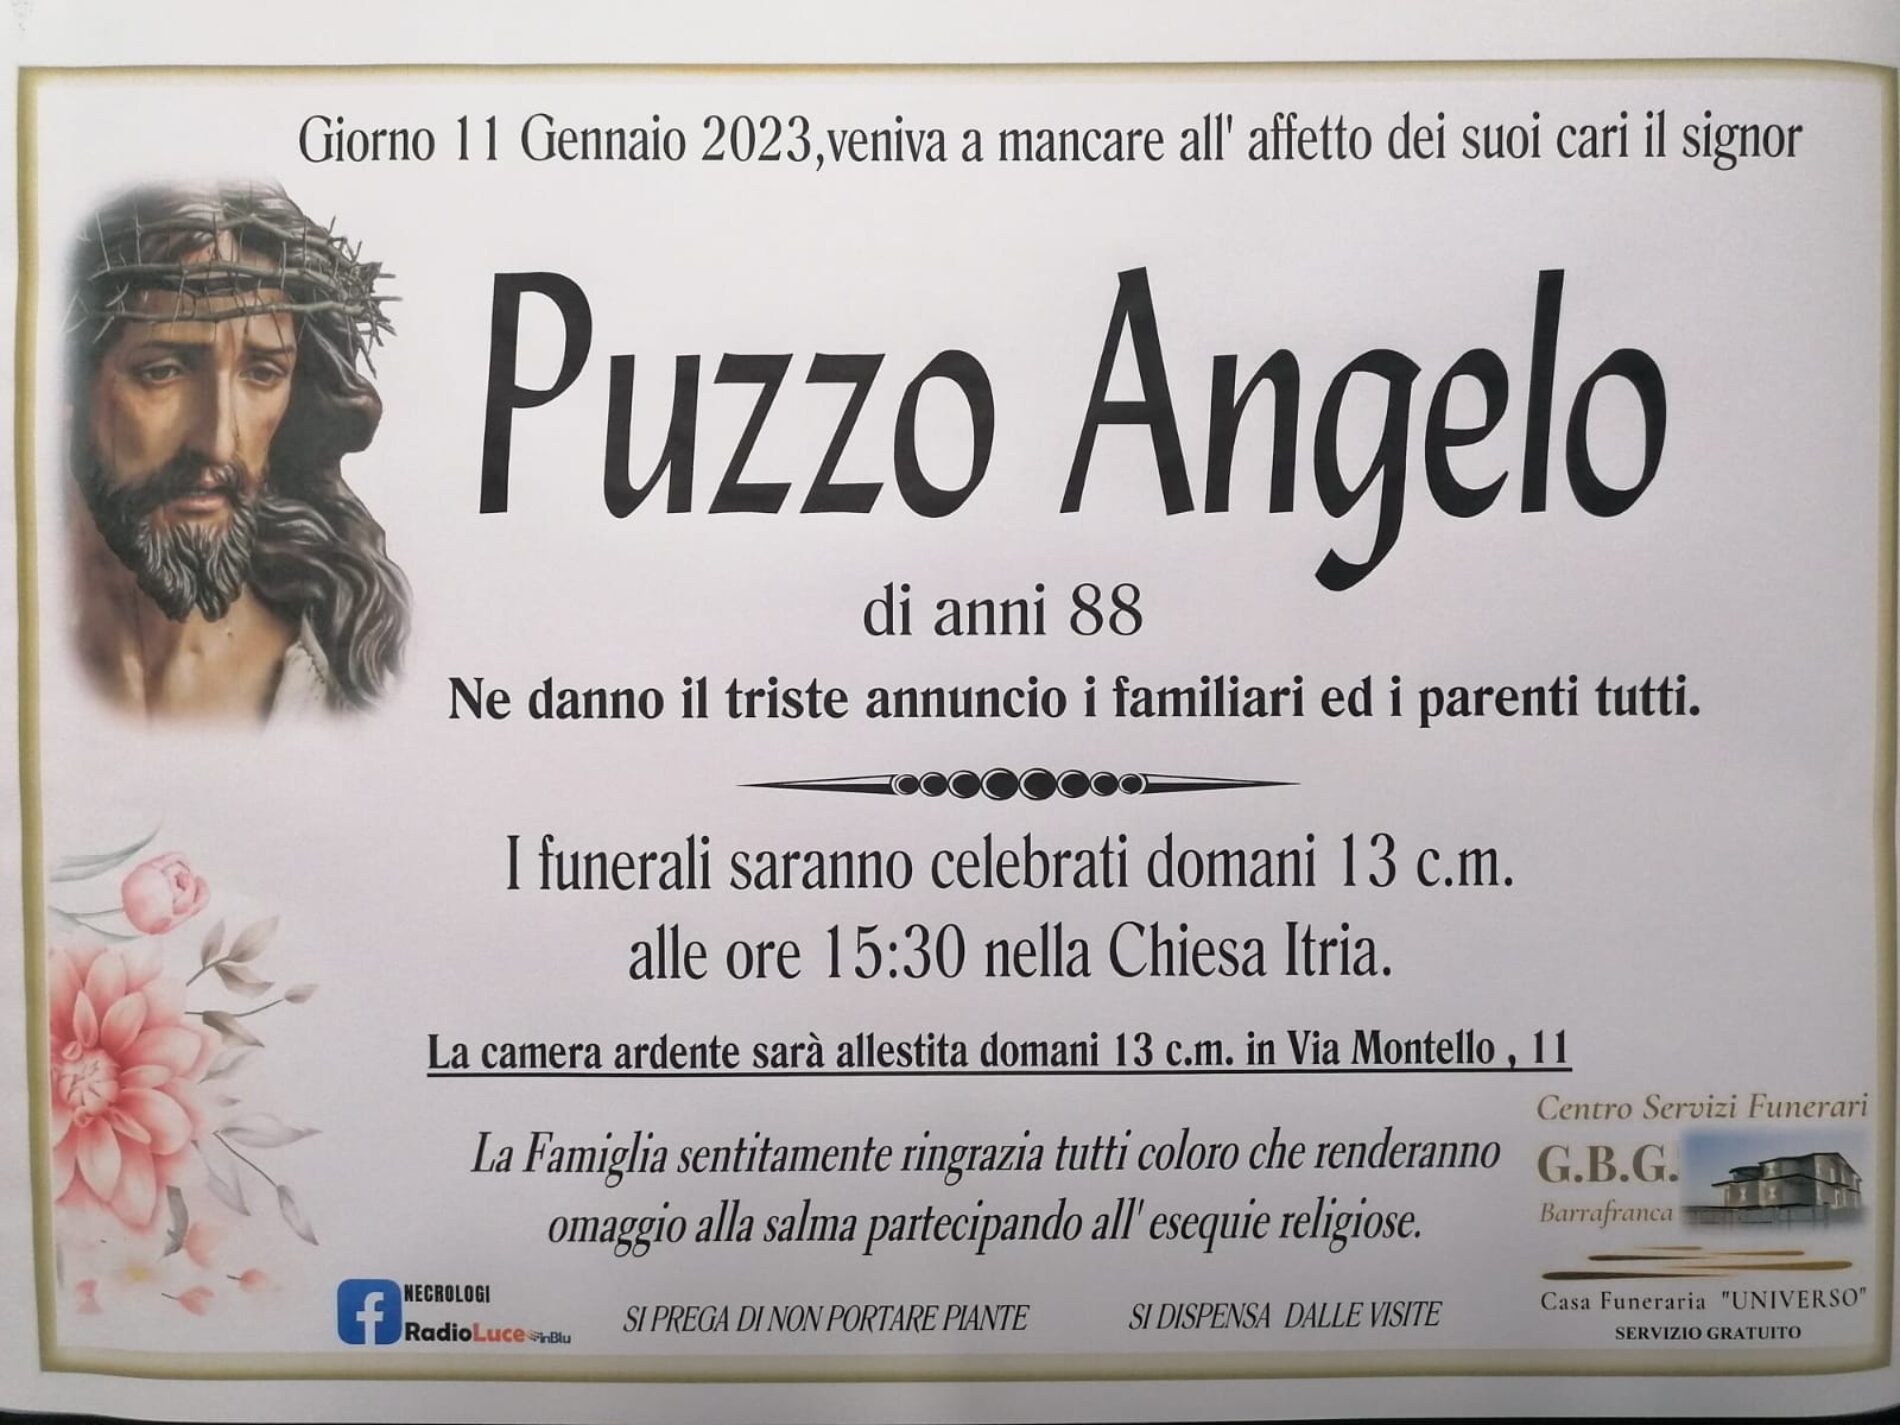 Annuncio servizi funerari agenzia G.B.G. signor  Puzzo Angelo di anni 88